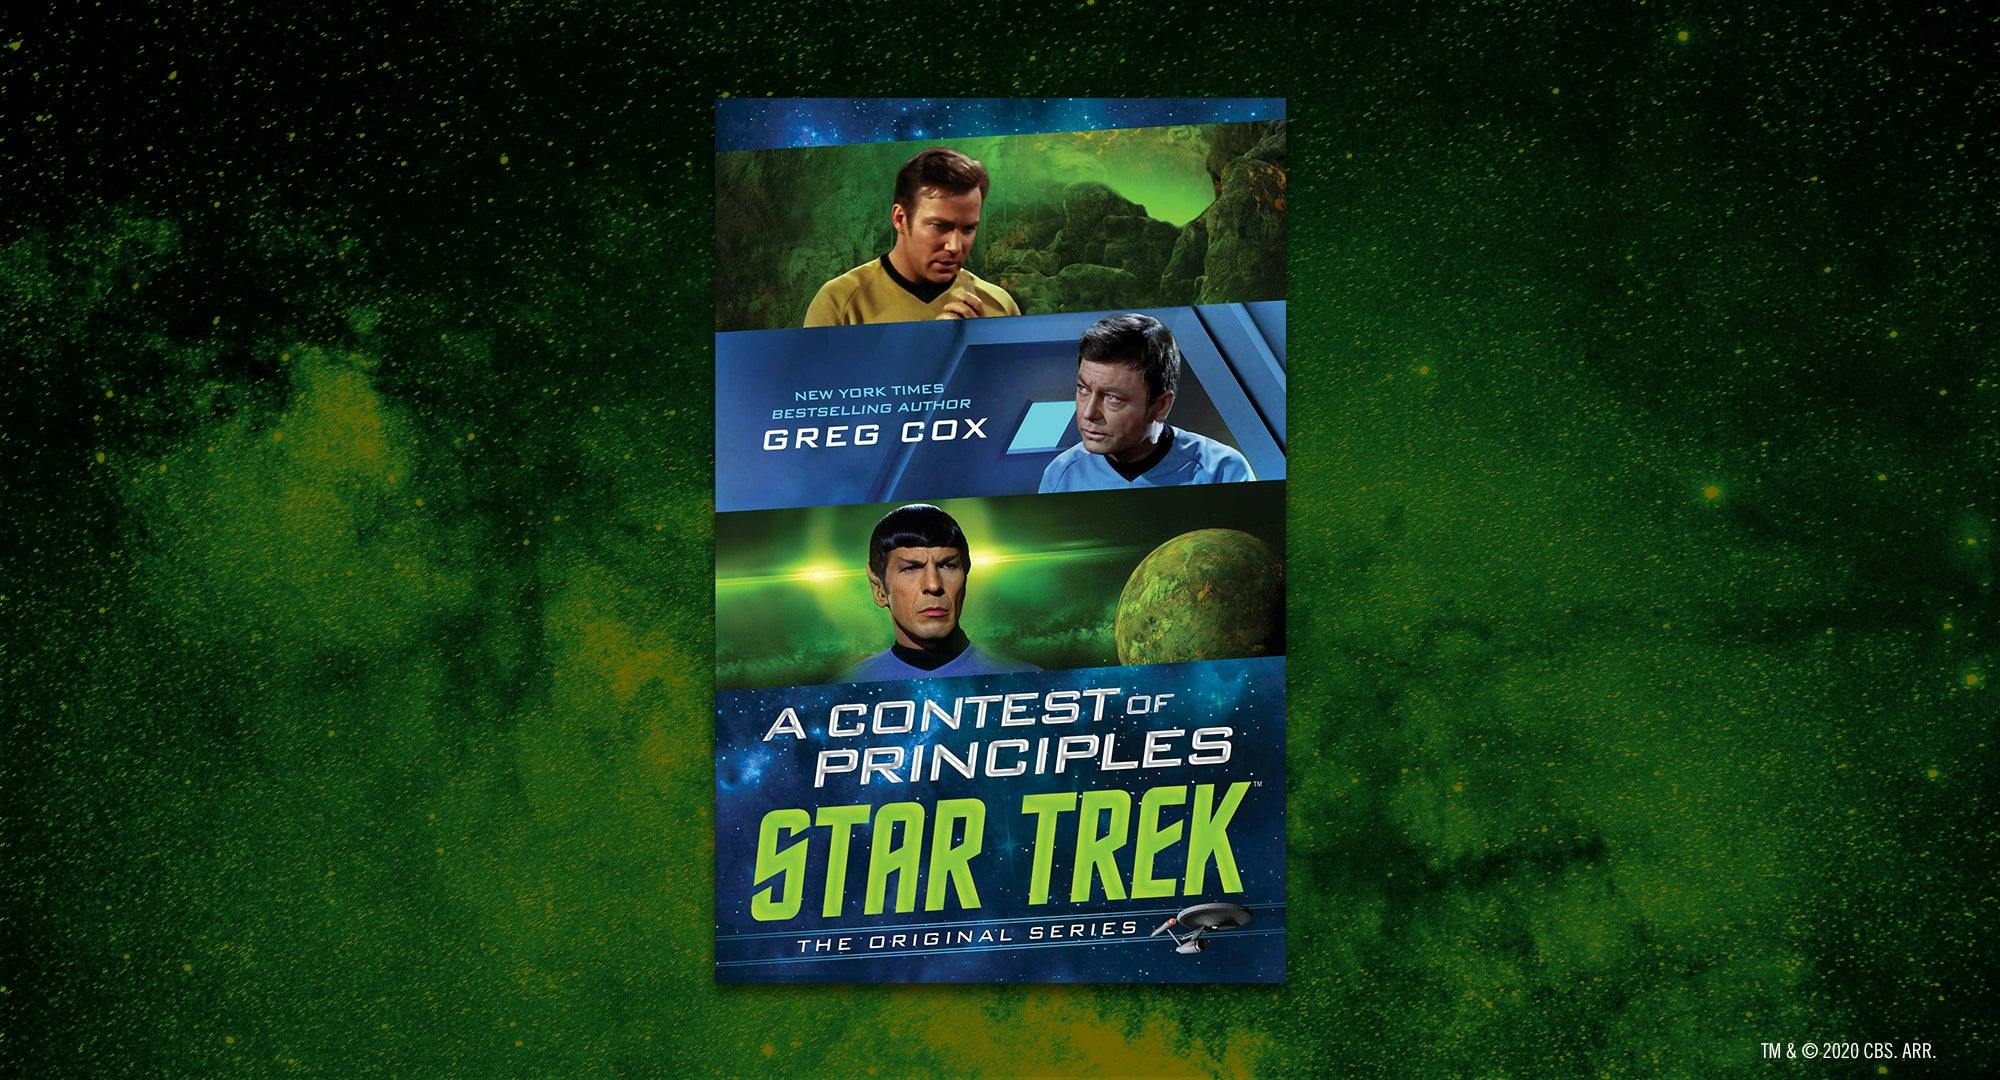 Star Trek: The Original Series: A Contest of Principles